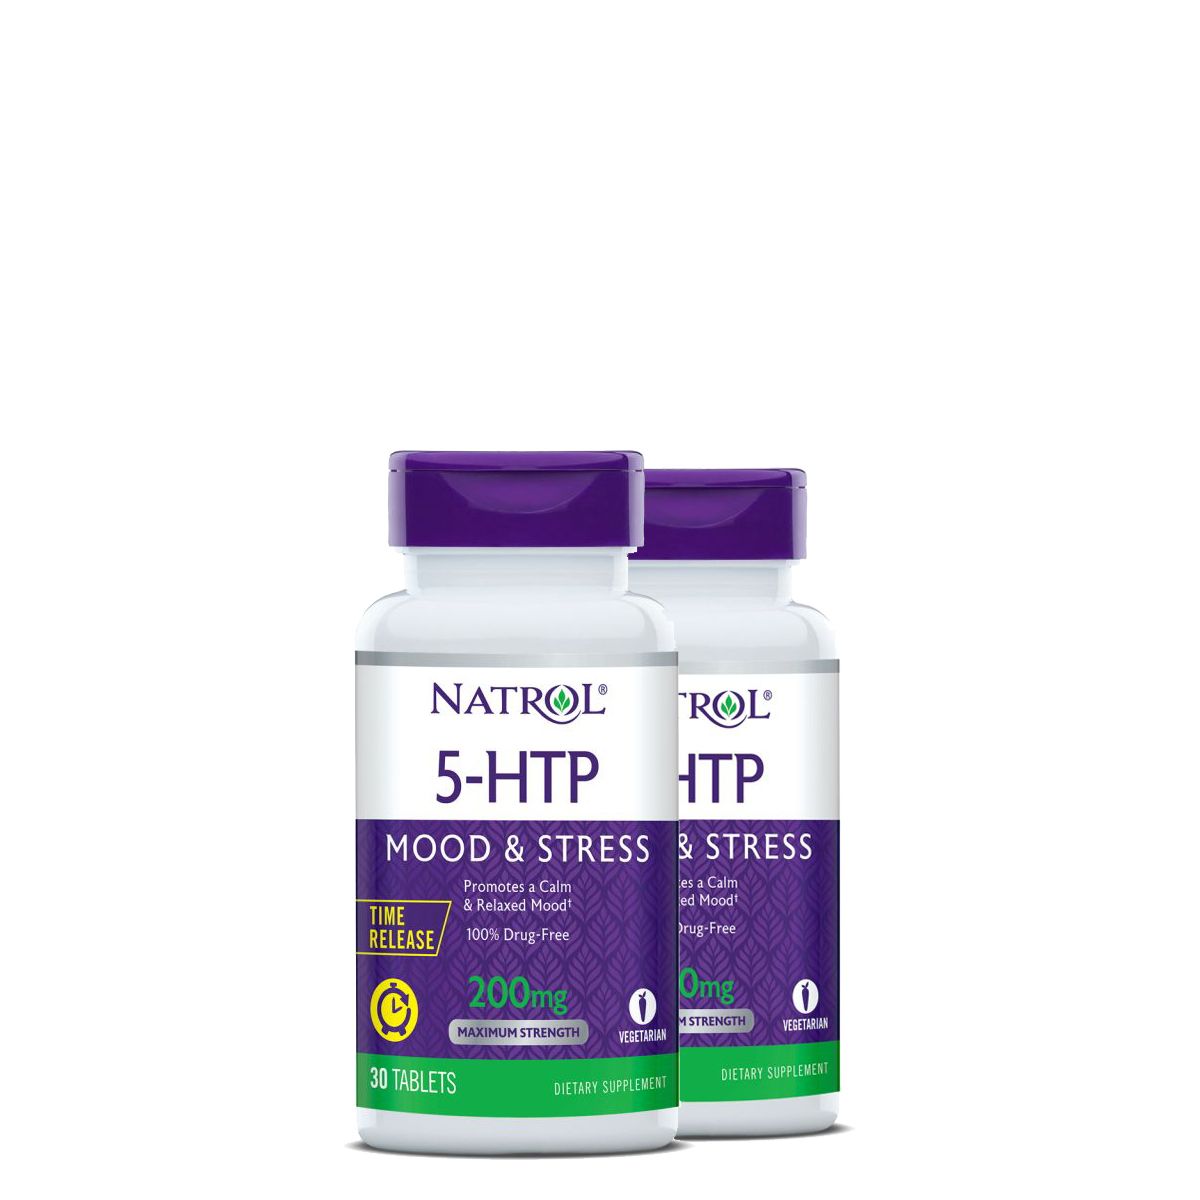 Elnyújtott felszívódású 5-hidroxi-triptofán 200 mg, Natrol 5-HTP Time Release, 2x30 kapszula